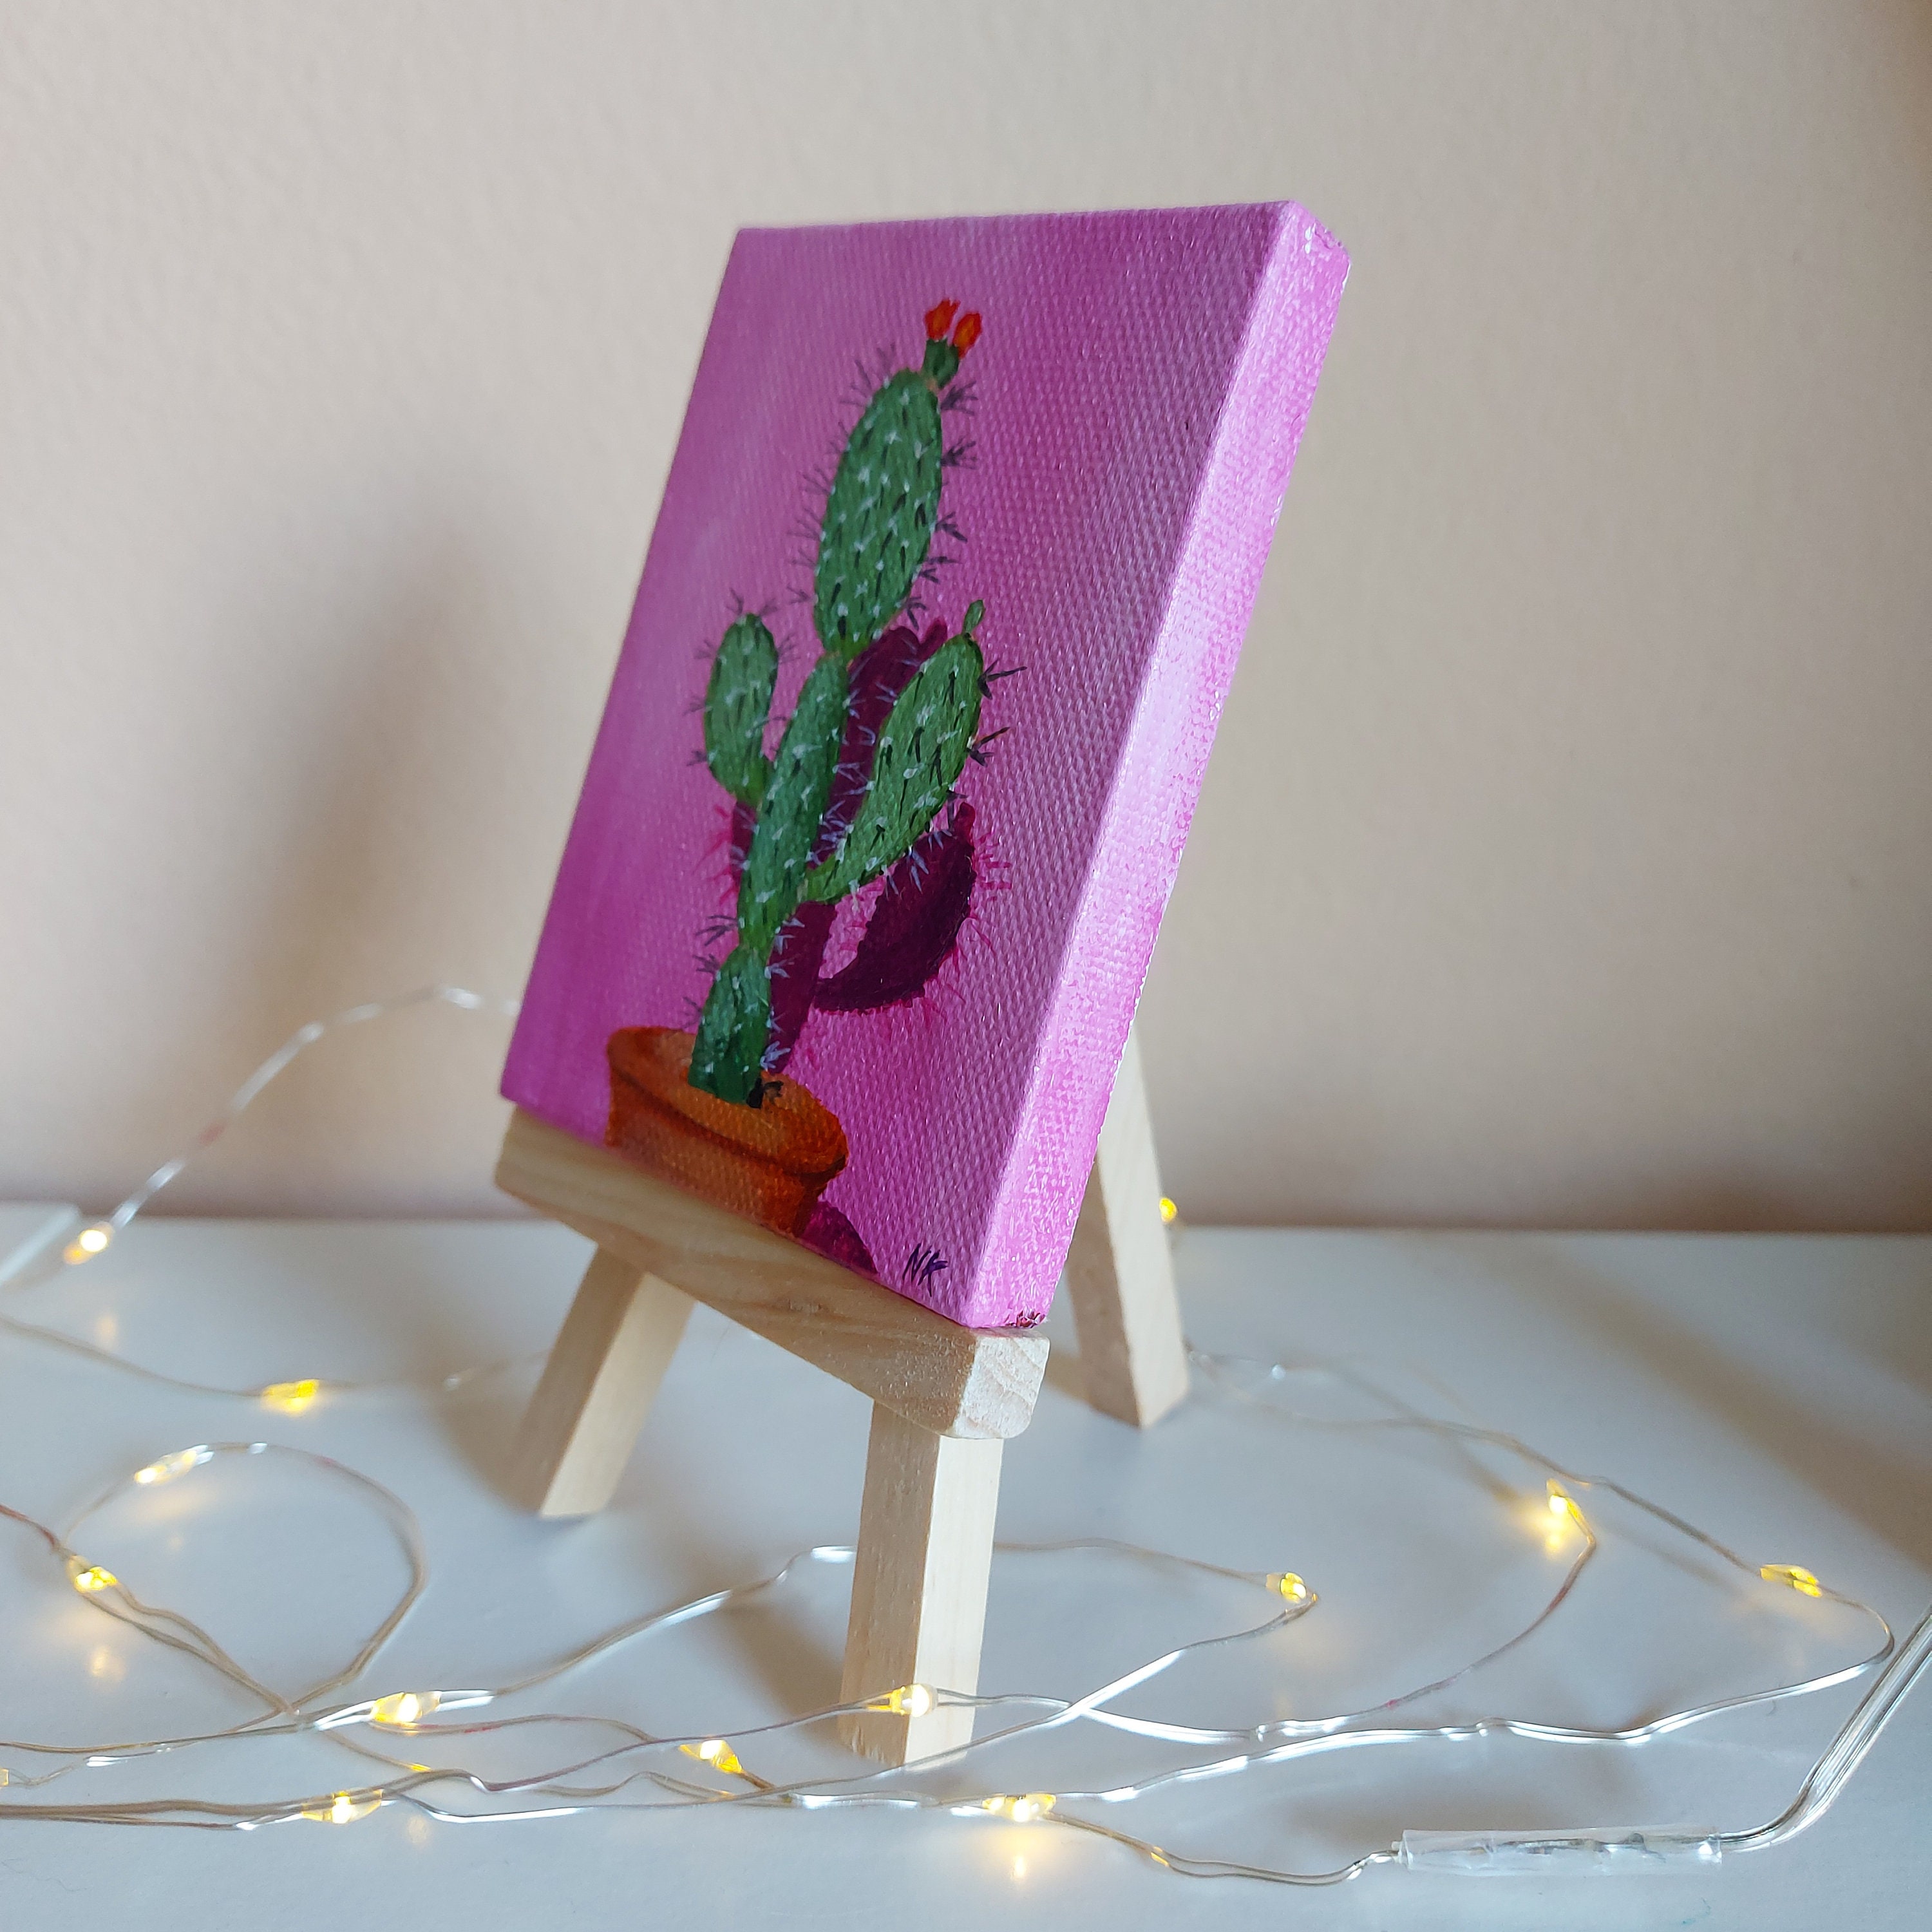 Petite Peinture Acrylique Mignonne D'un Cactus De Bande Dessinée Dans Un  Pot Coloré Photo stock - Image du activité, dessin: 127495682